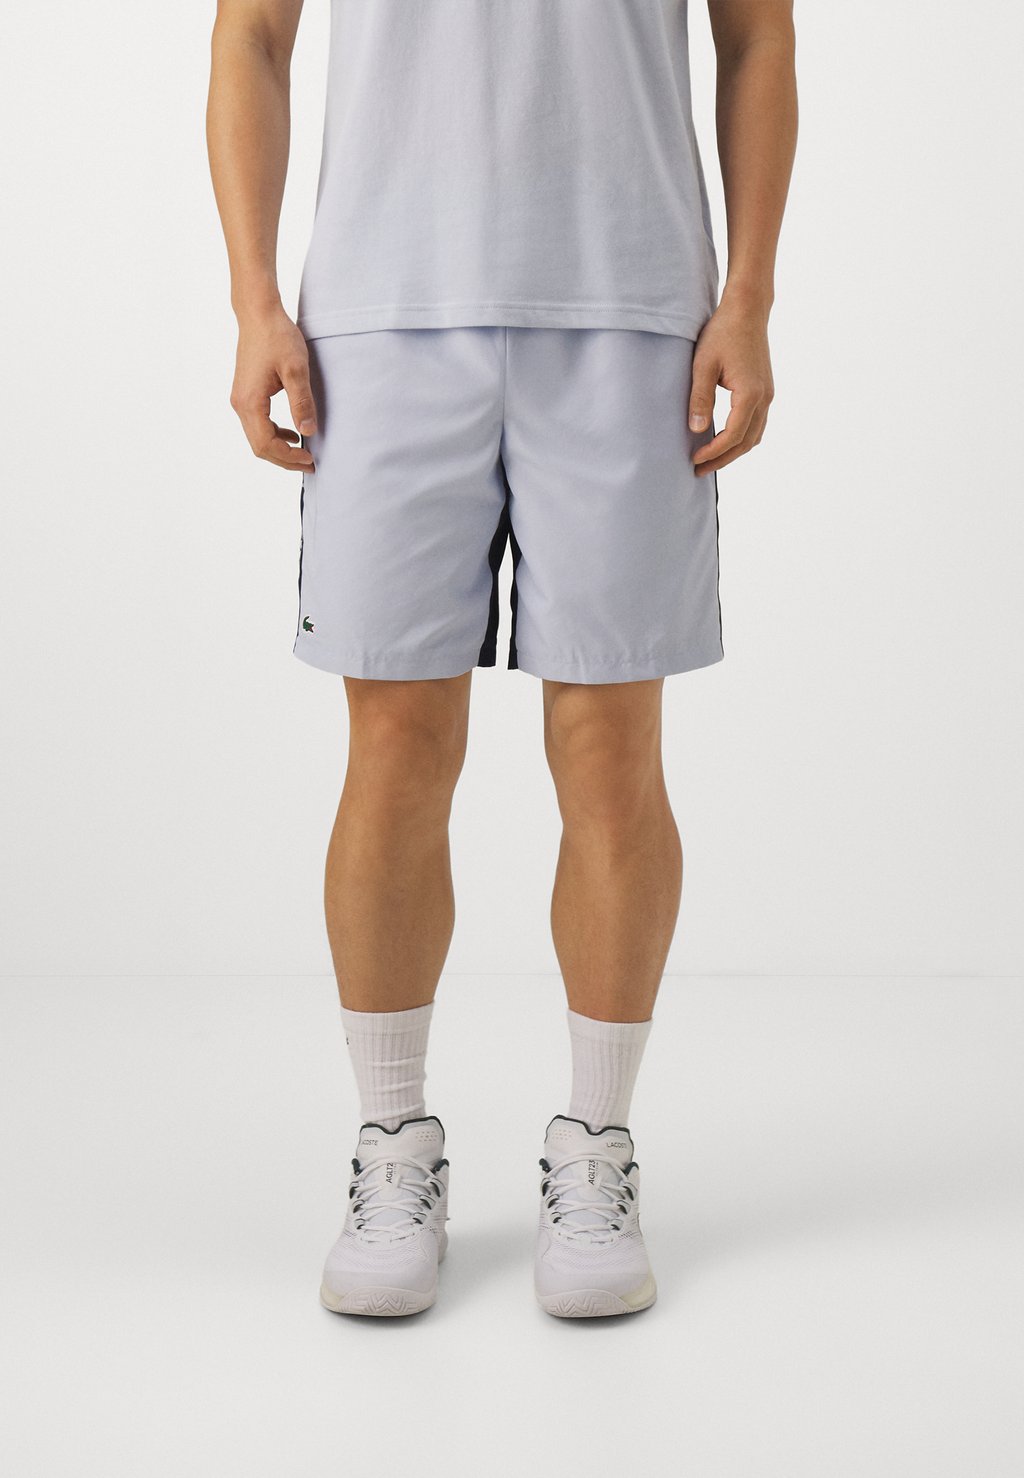 Спортивные шорты Shorts Tc Lacoste, цвет phoenix blue/navy blue шорты lacoste sport fleece shorts цвет navy blue